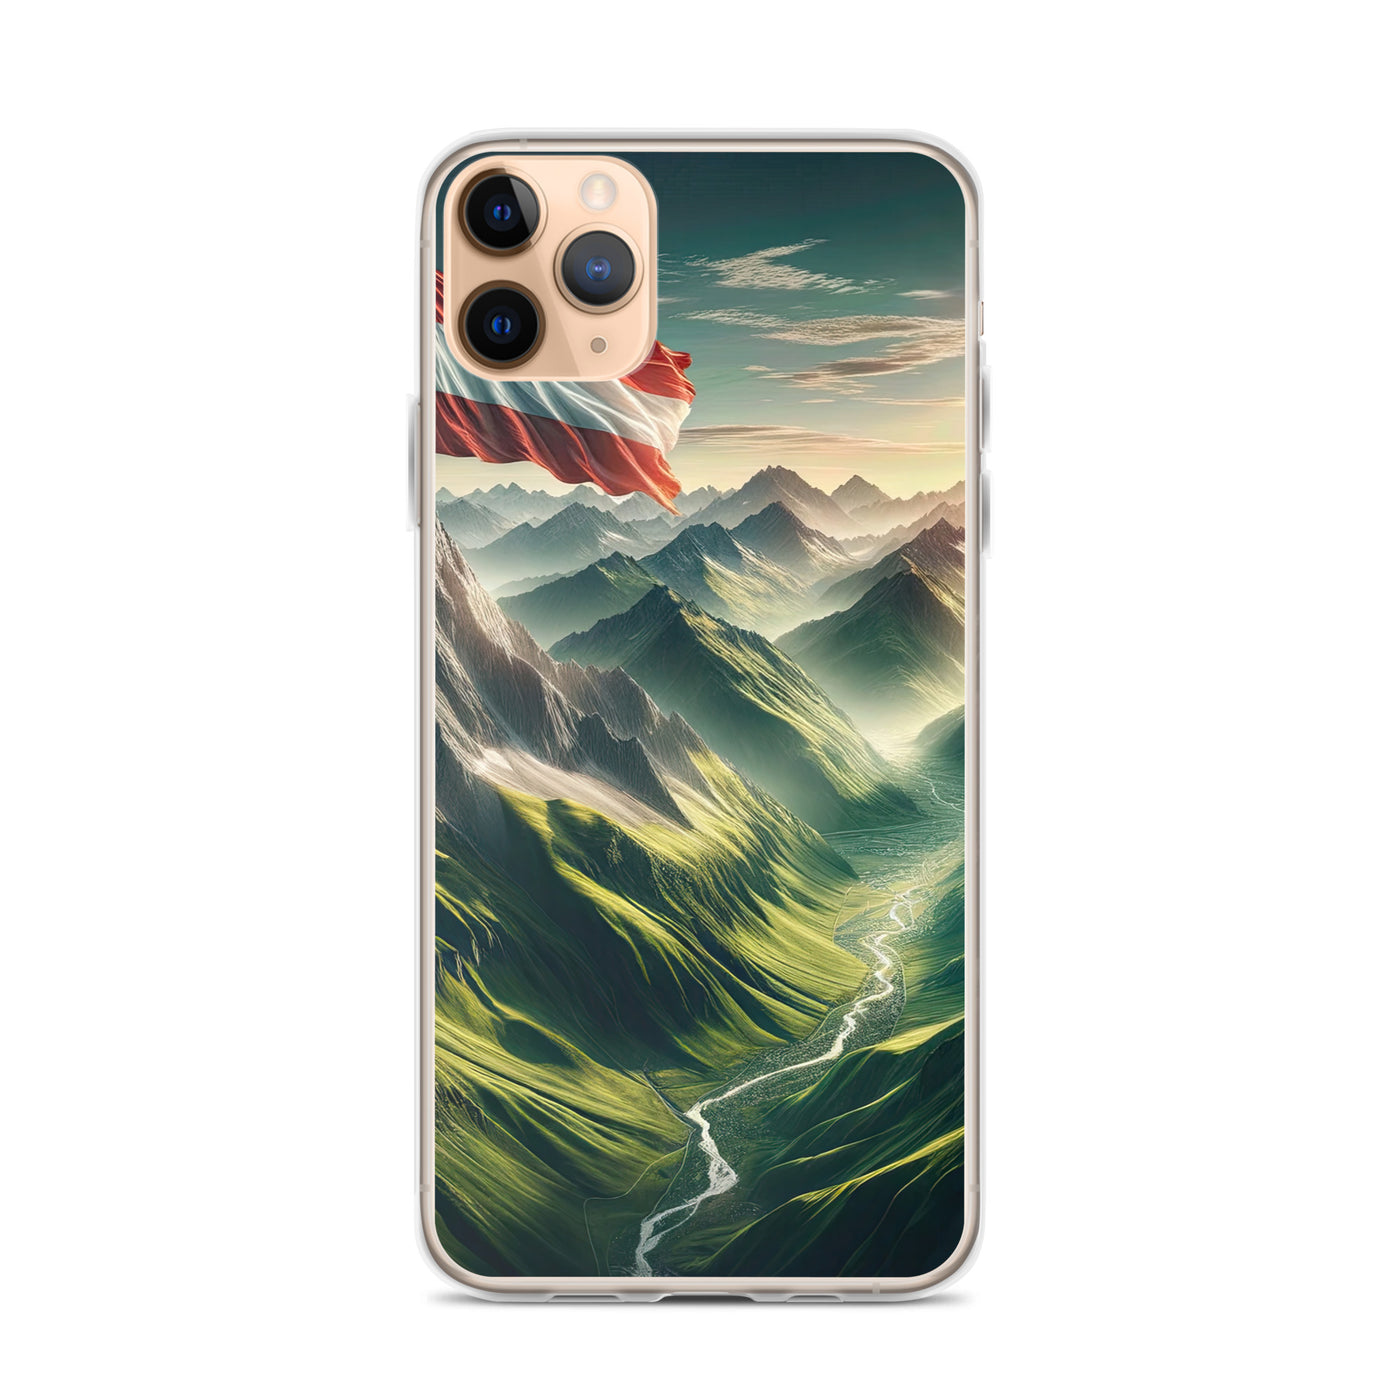 Alpen Gebirge: Fotorealistische Bergfläche mit Österreichischer Flagge - iPhone Schutzhülle (durchsichtig) berge xxx yyy zzz iPhone 11 Pro Max